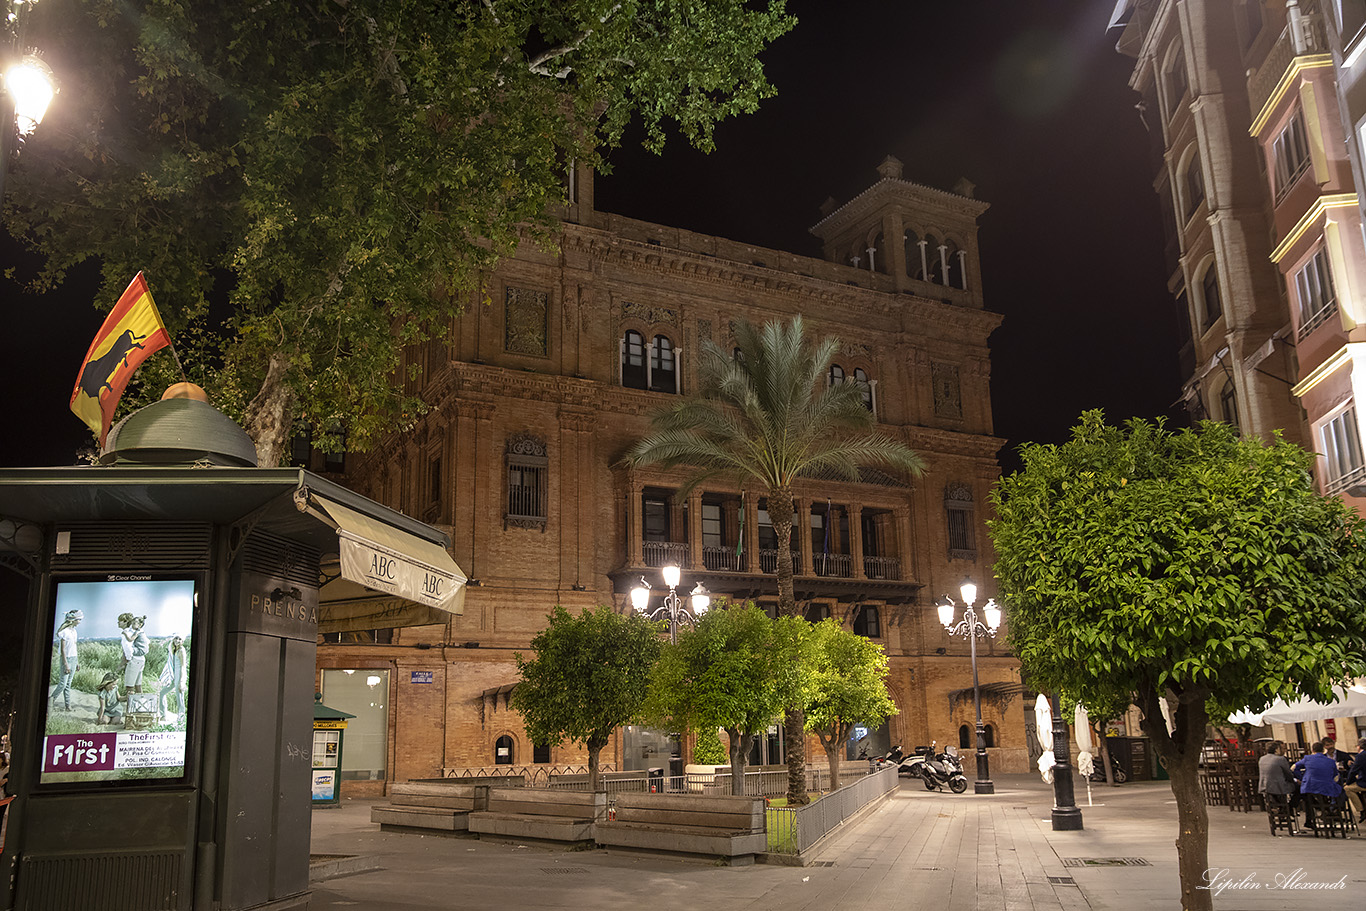 Севилья (Sevilla)